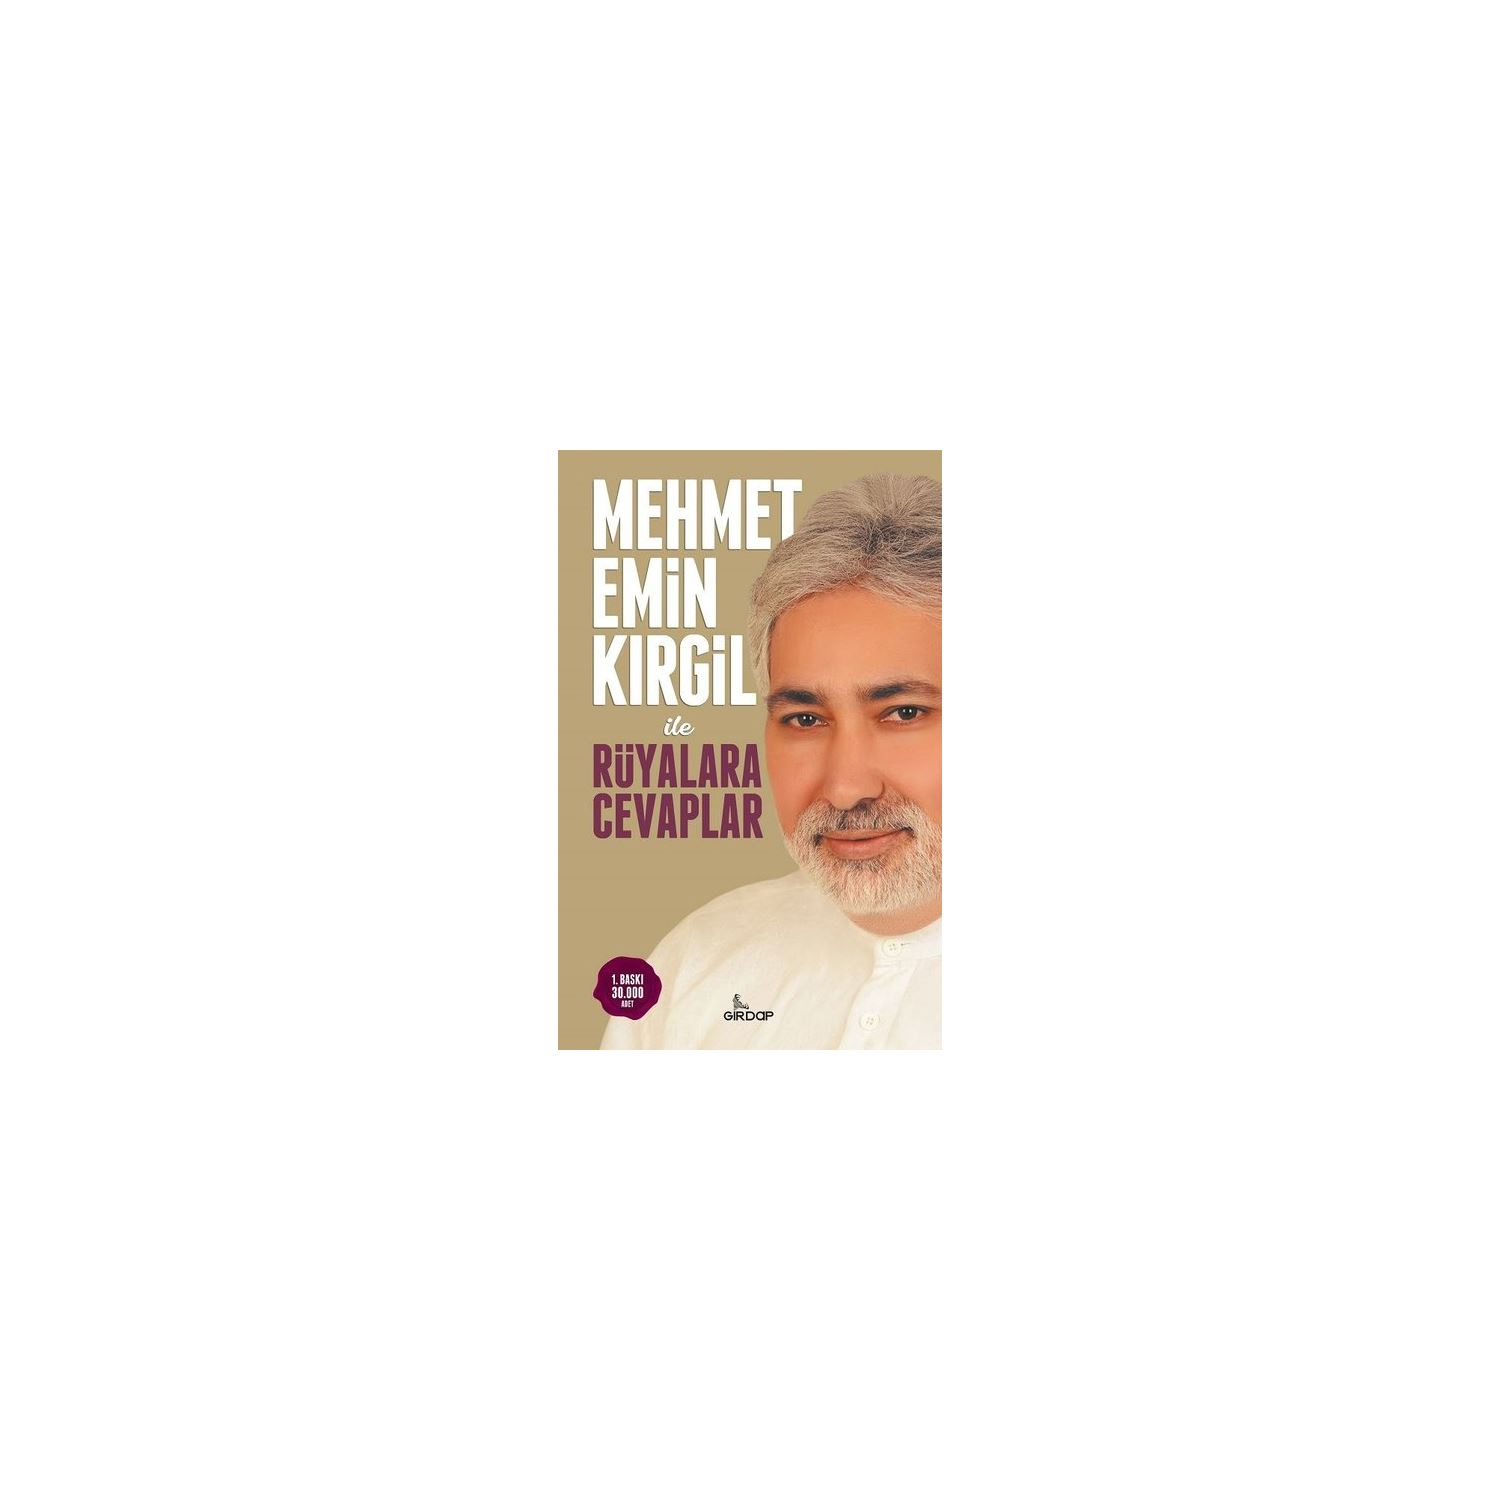 Mehmet Emin Kırgil İle Rüyalara Cevaplar | Deniz Shop fiçin Mehmet Emin Kirgil Nereli